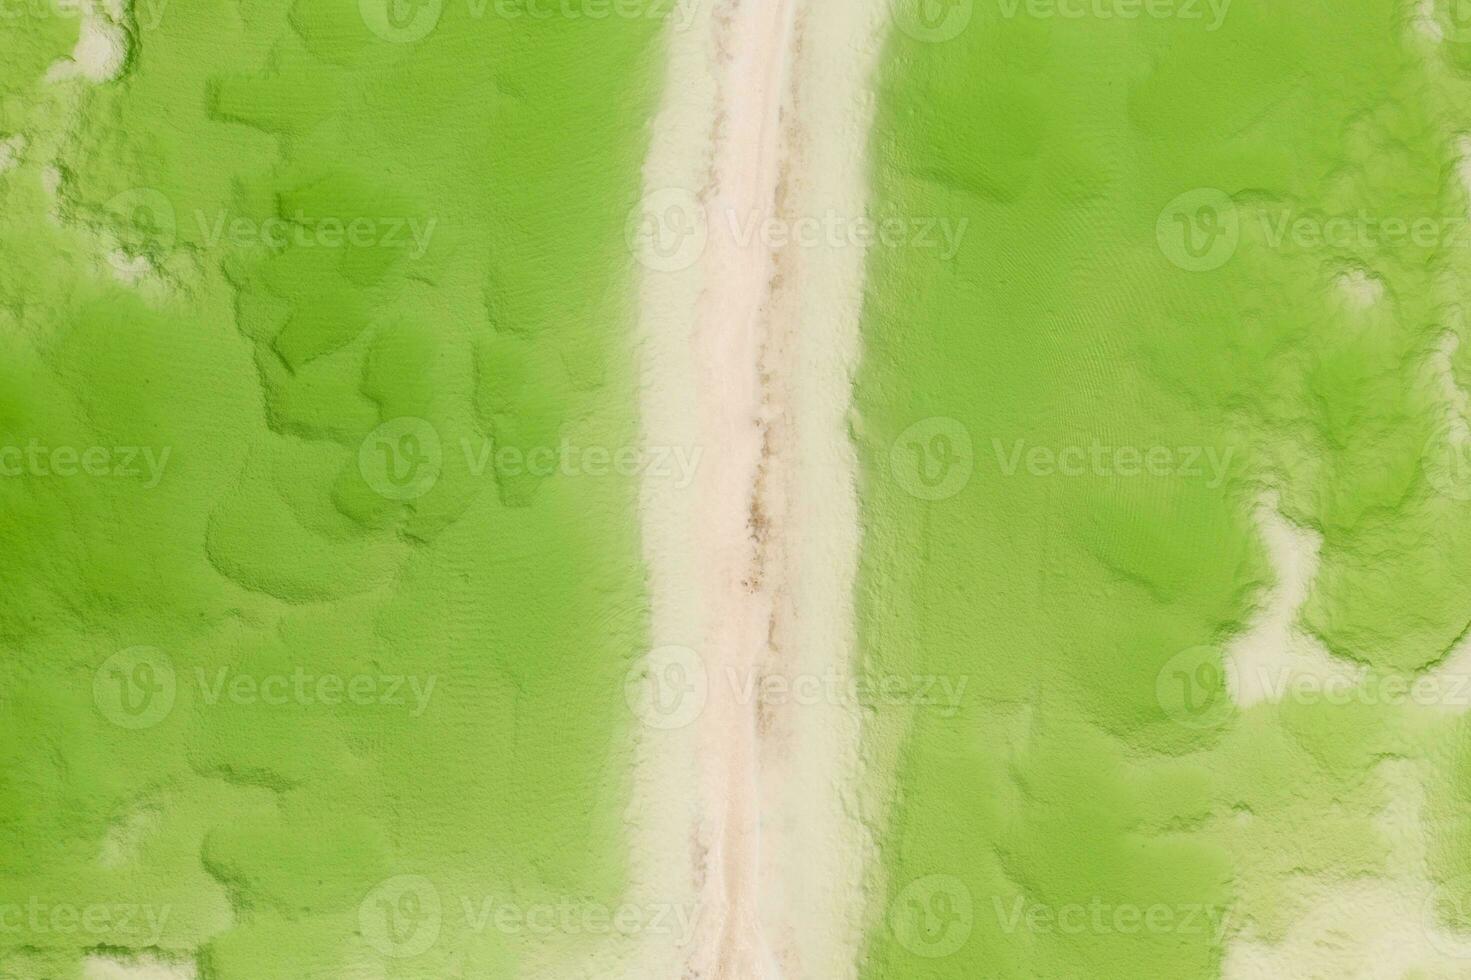 das Grün Kochsalzlösung See, natürlich See Hintergrund. foto